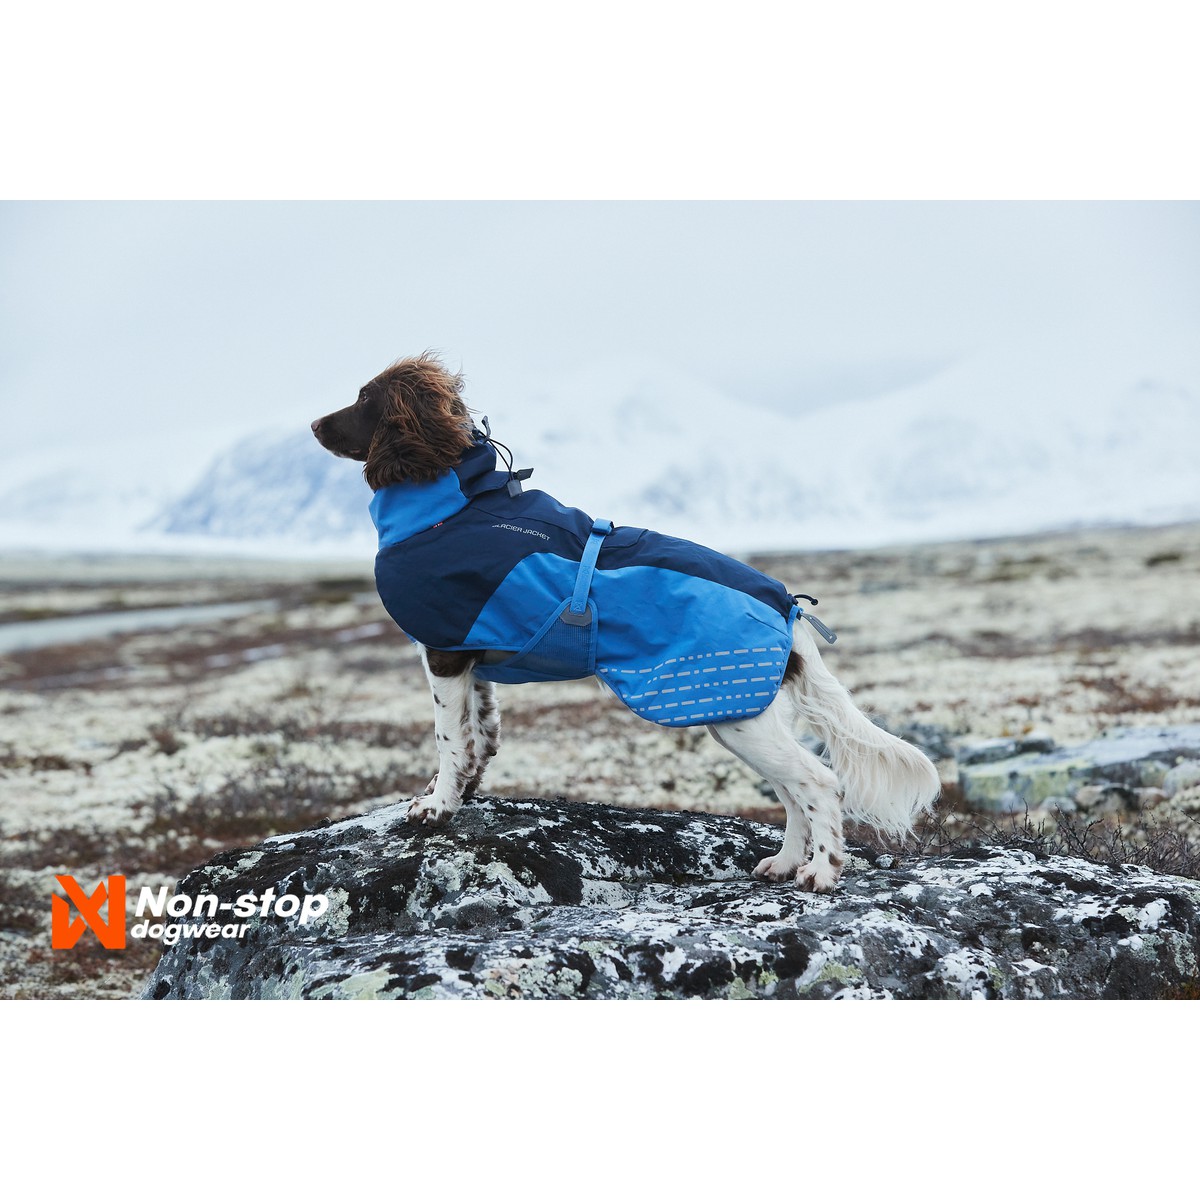 Non-Stop dogwear Glacier Manteau Glacier Jacket T60 Bleu azur foncé T60